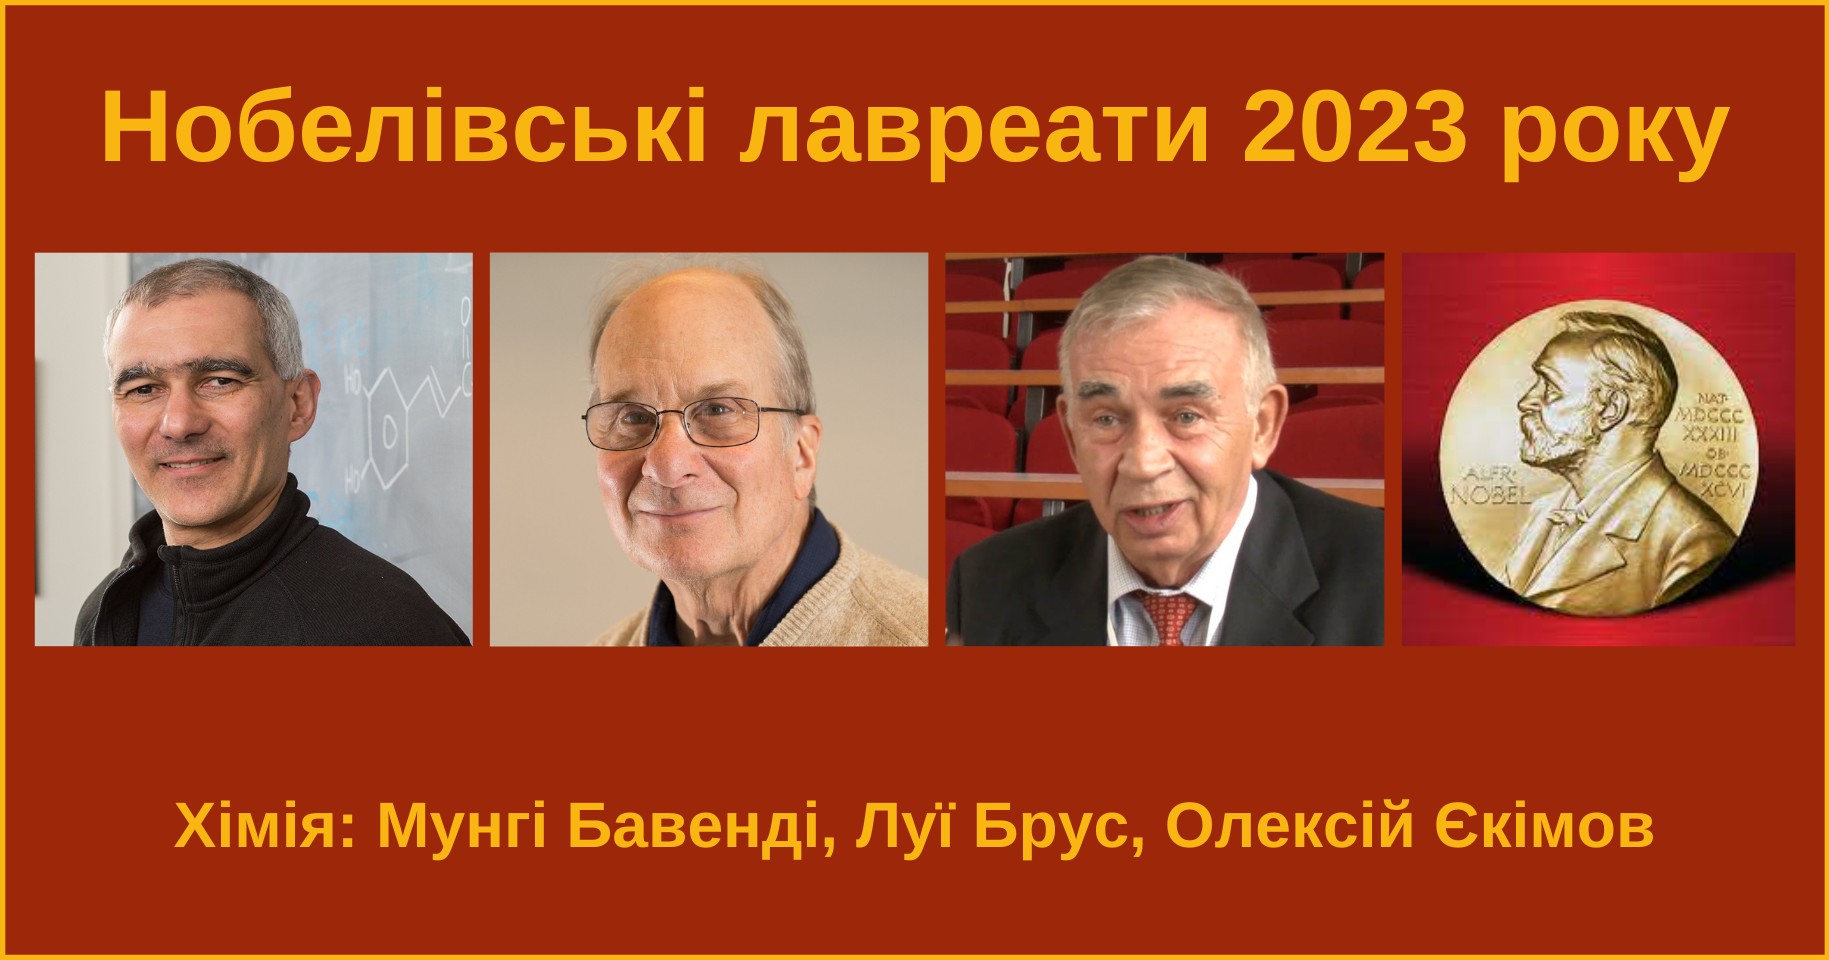 Нобелівську премію з хімії 2023 року отримали вчені Мунгі Бавенді, Луї Брус та Олексій Єкімов